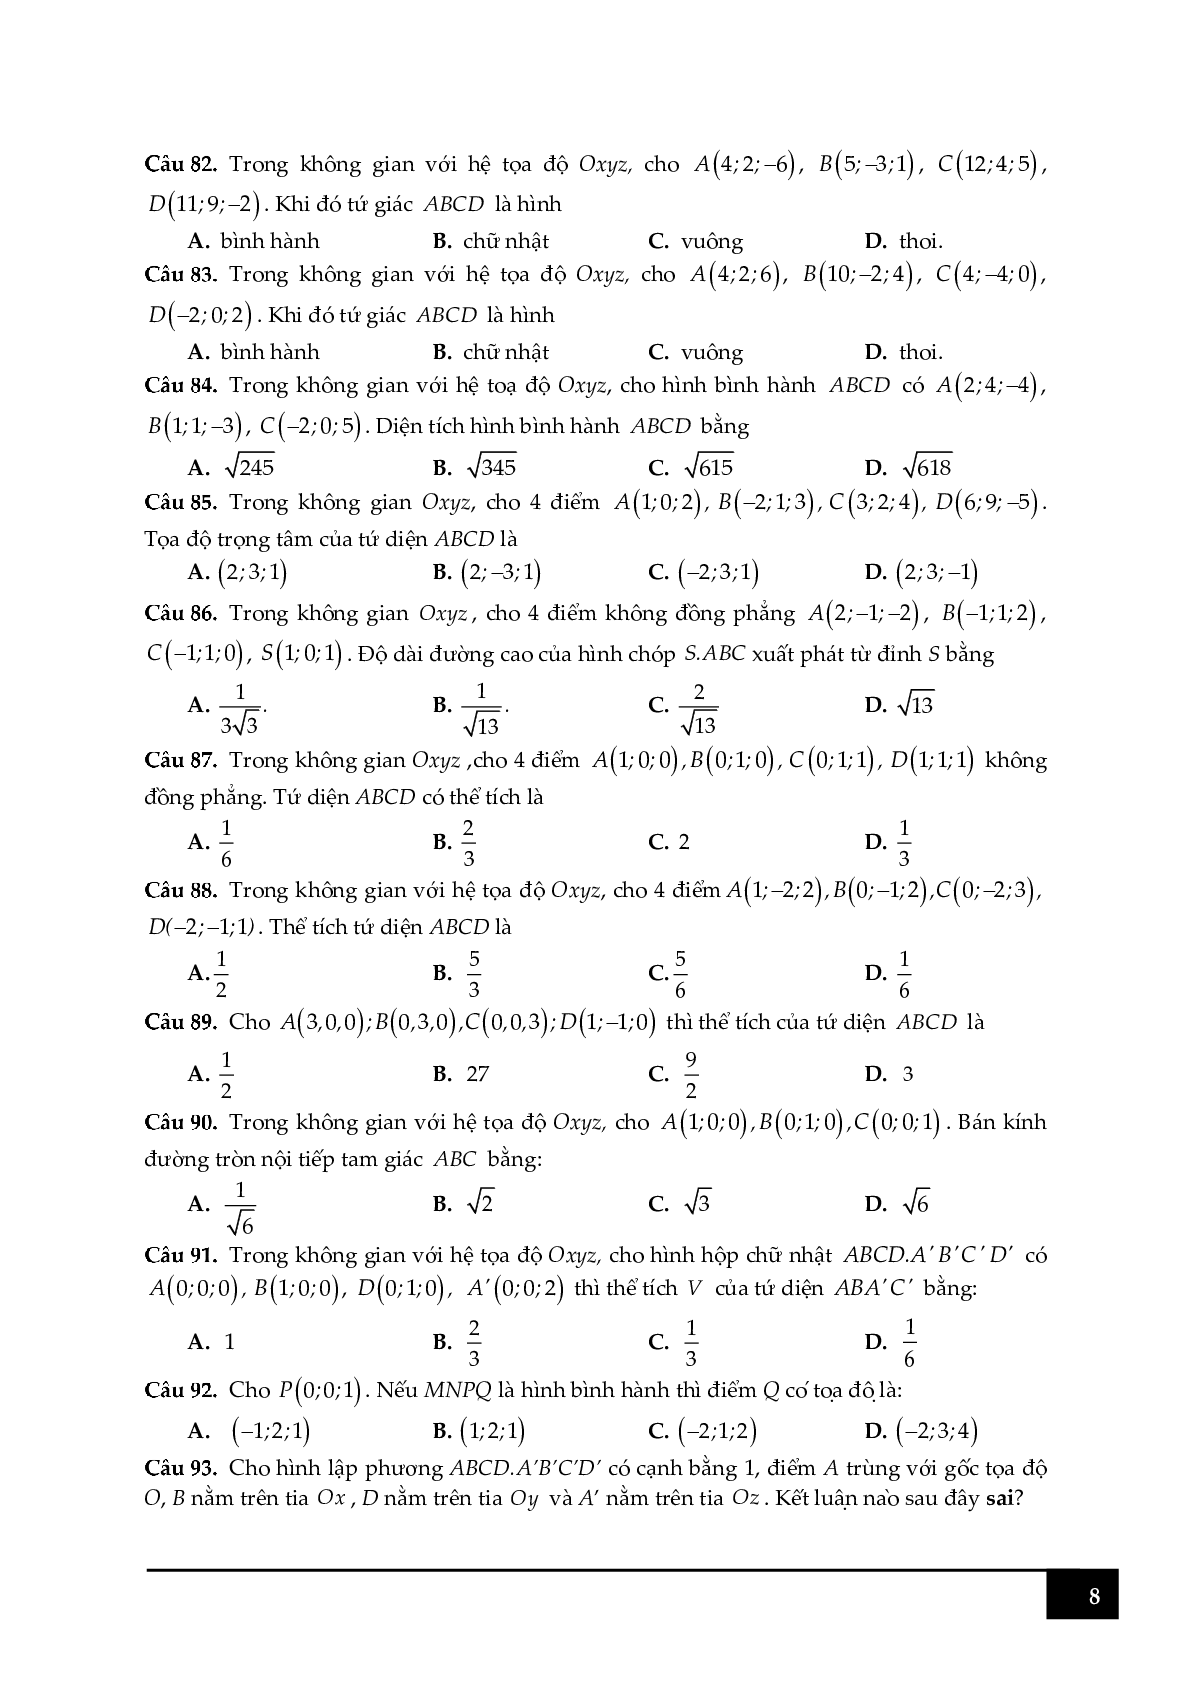 100 câu hỏi trắc nghiệm về tọa độ điểm trong Oxyz (trang 8)